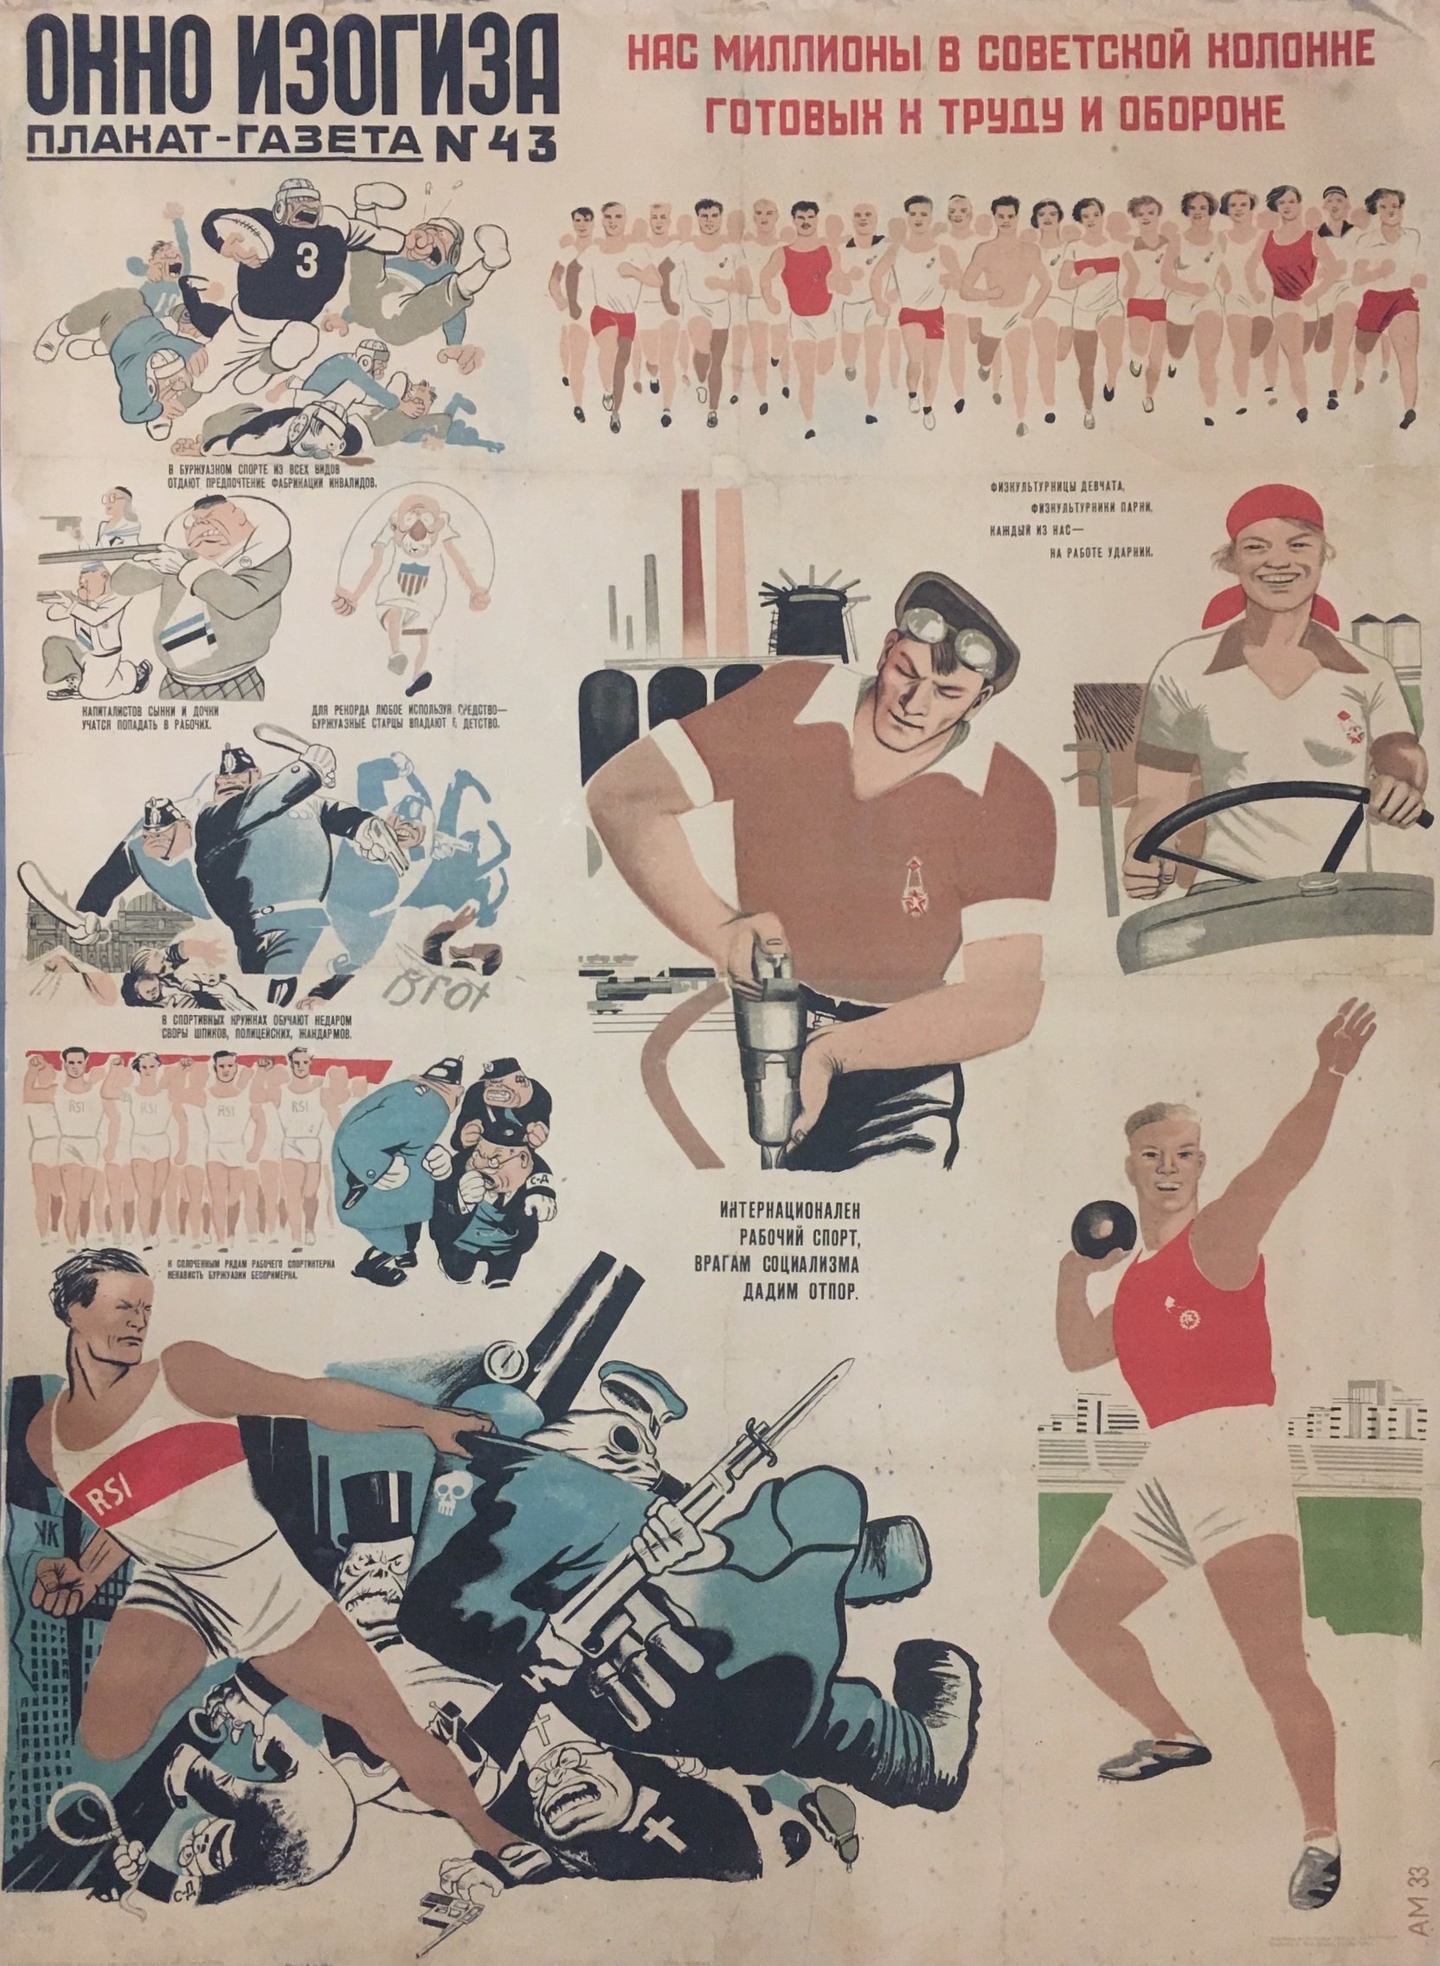 Плакаты про спорт. Советские cgjhnbdystплакаты. Совесткиеспортивные плакаты. Старые спортивные плакаты. Советские плакаты про спорт.